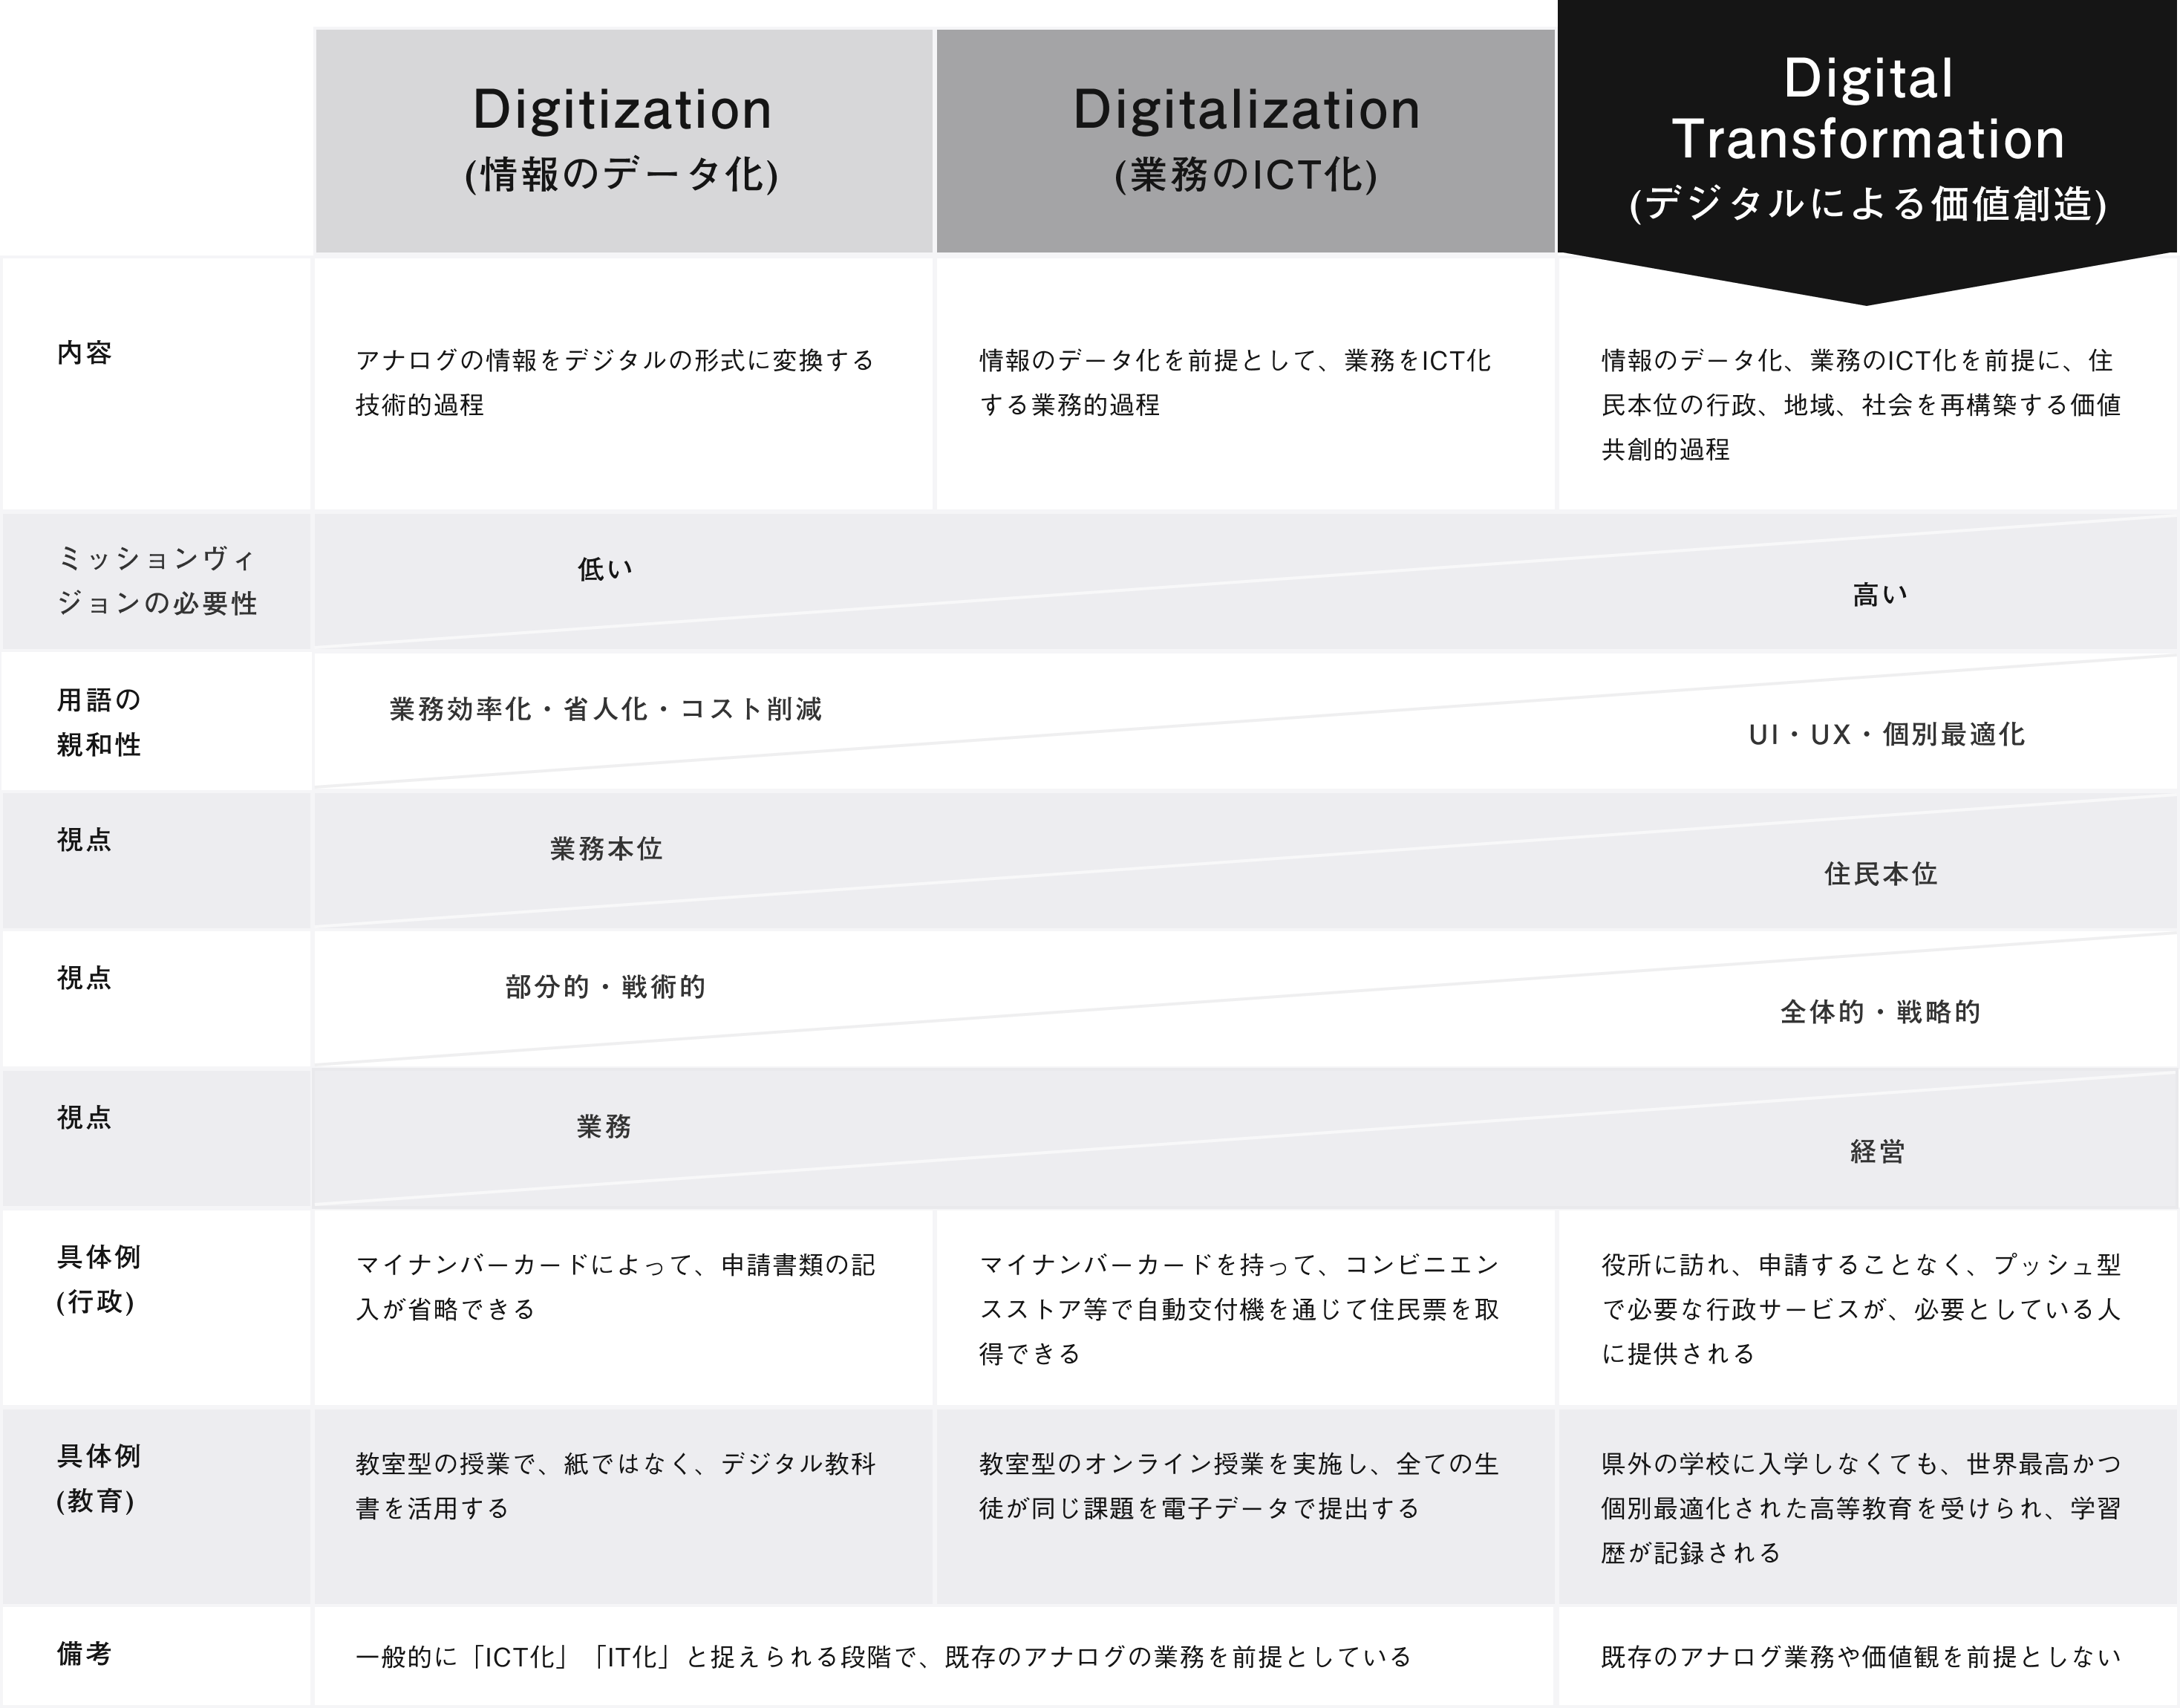 デジタル化の３分類